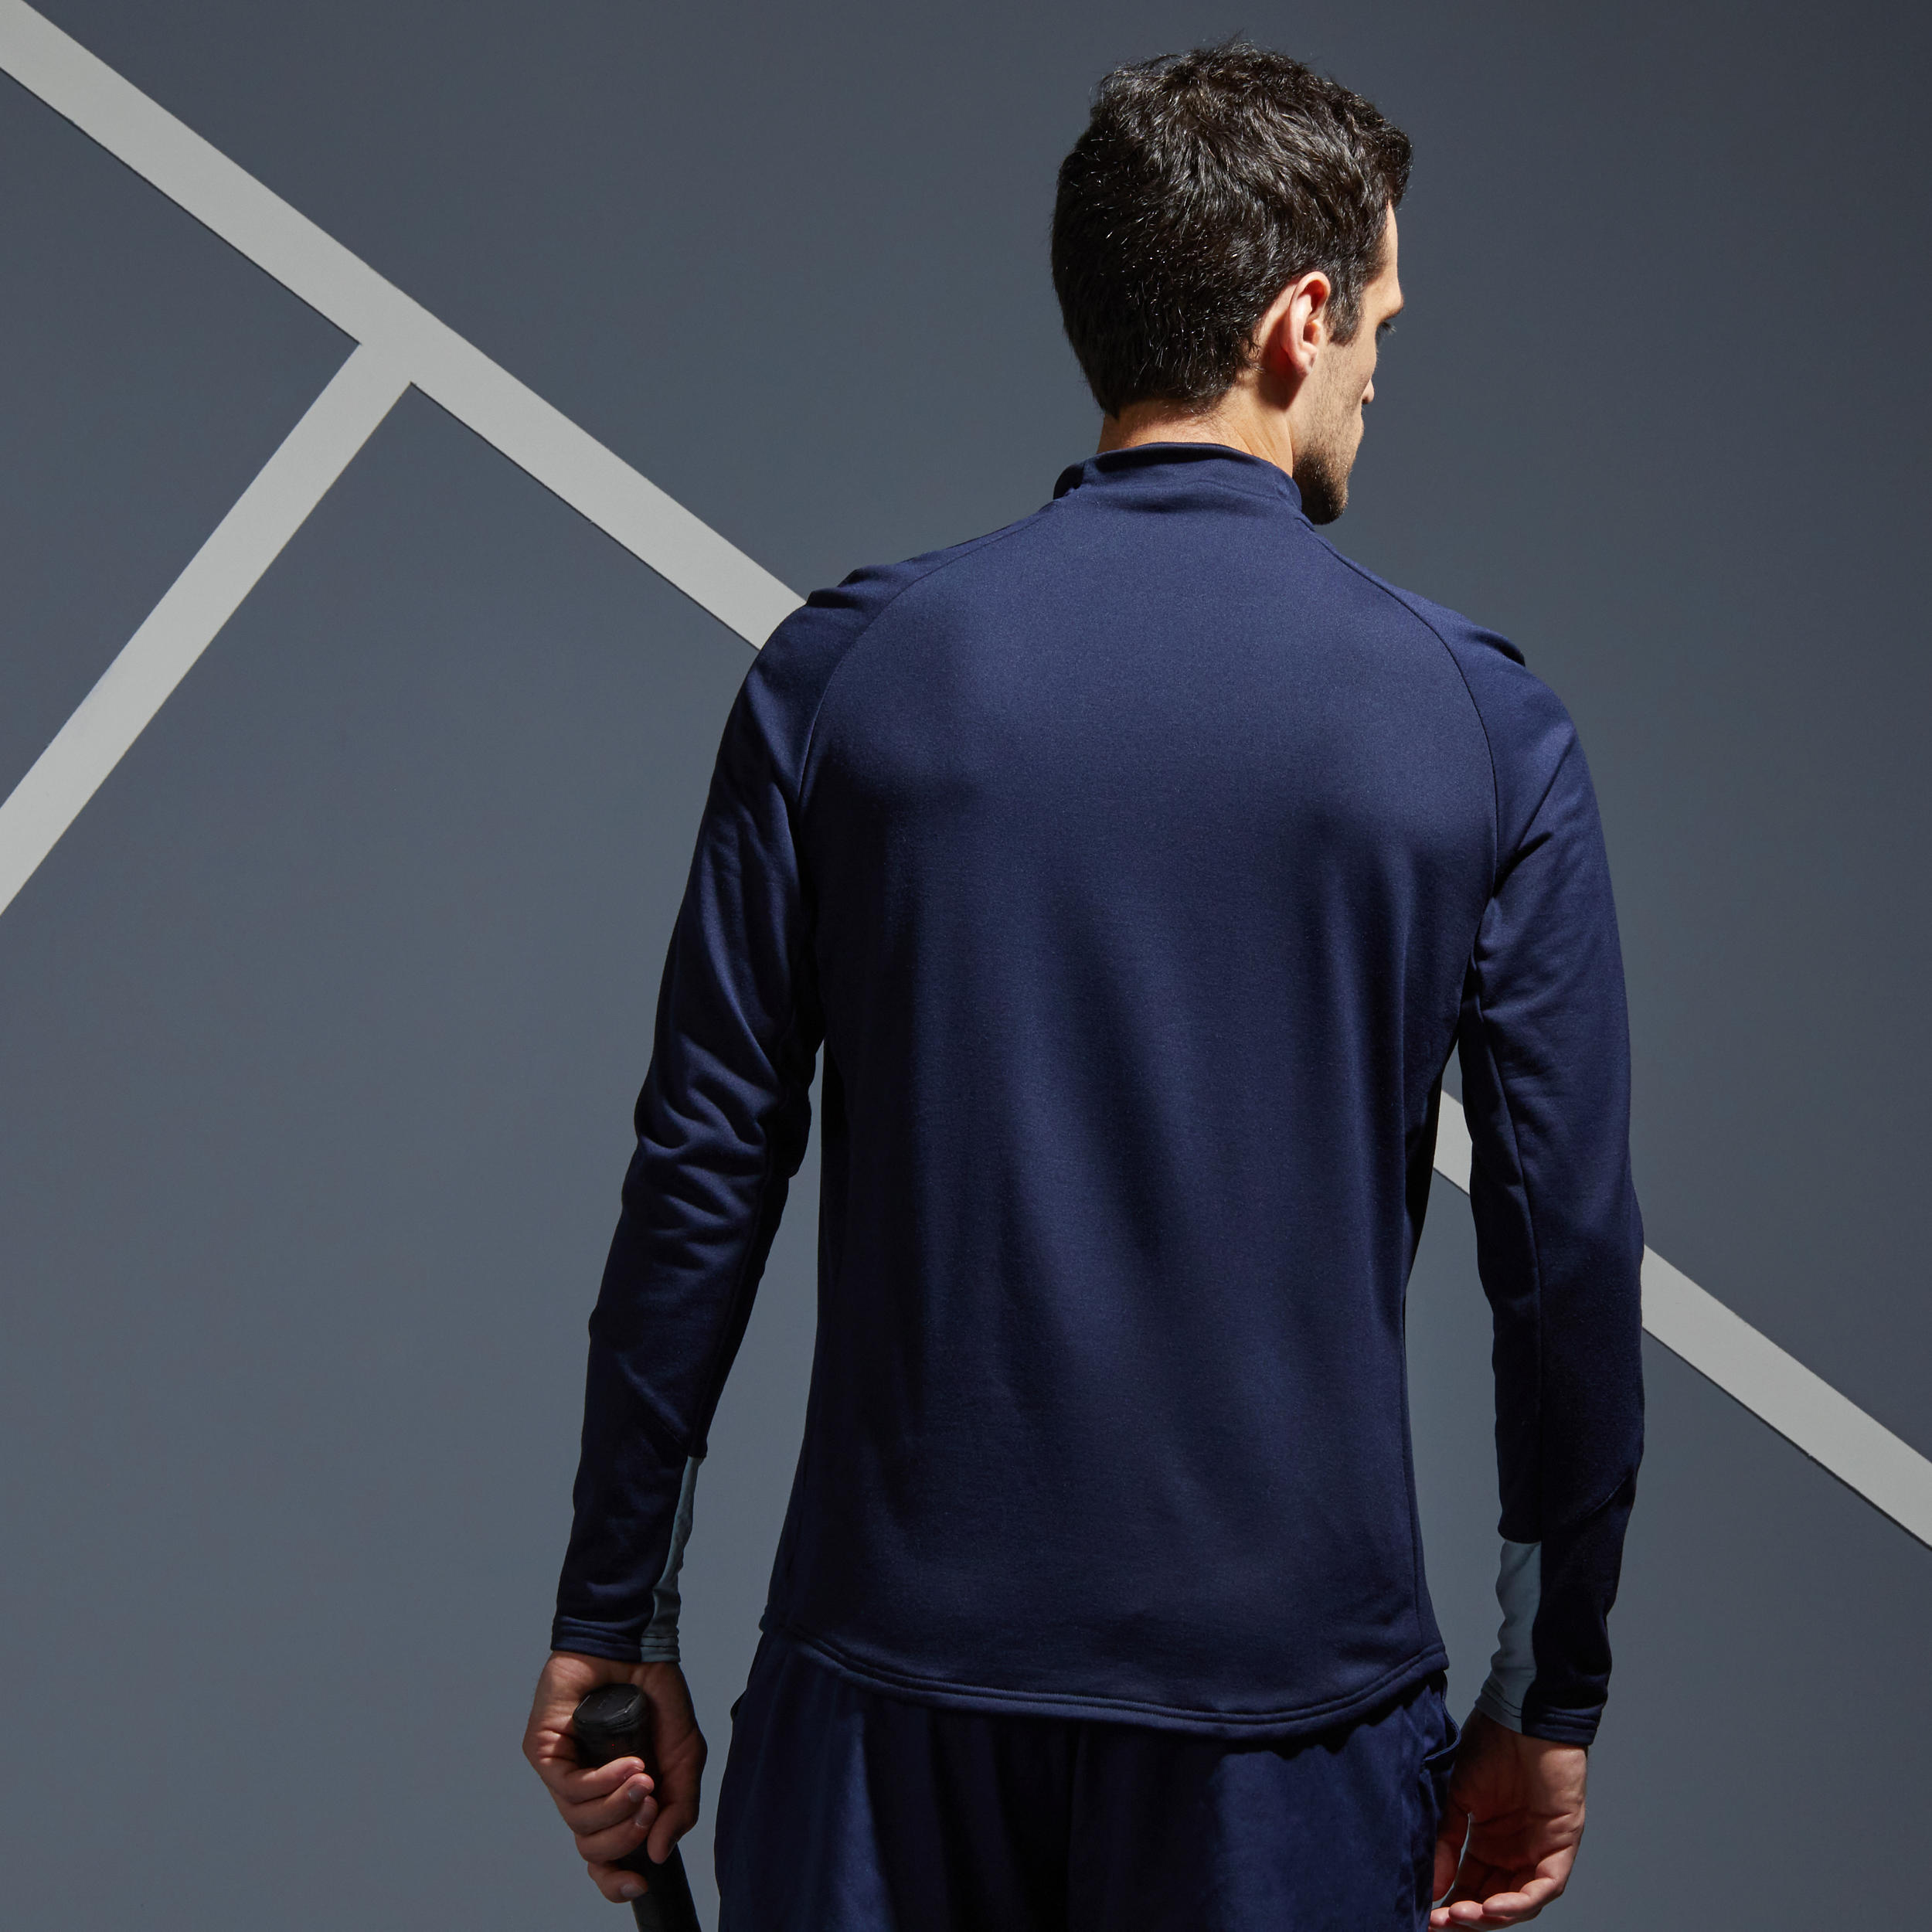 Men's Half-Zip Long-Sleeved Thermal Tennis Sweatshirt - Navy Blue 2/8